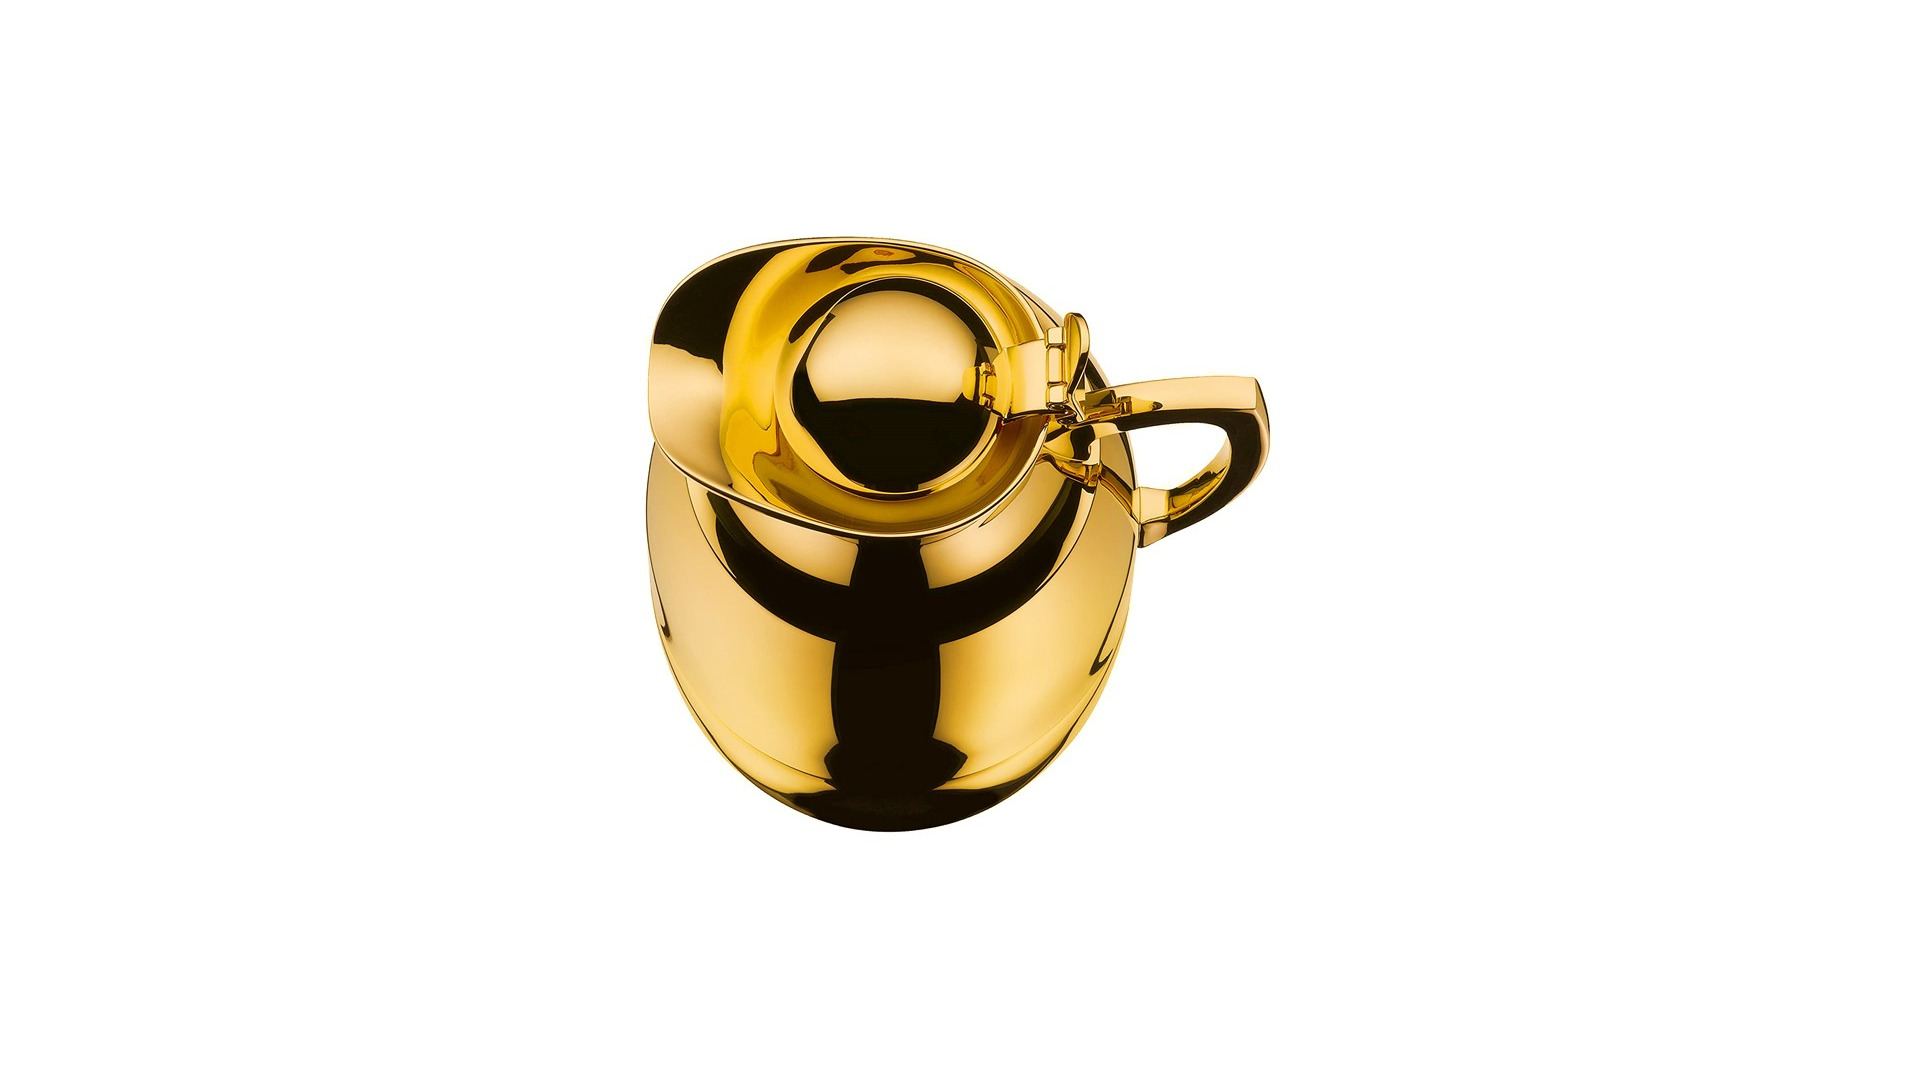 Термокувшин вакуумный со стеклянной колбой Alfi Juwel 1 л, золотой, сталь нержавеющая